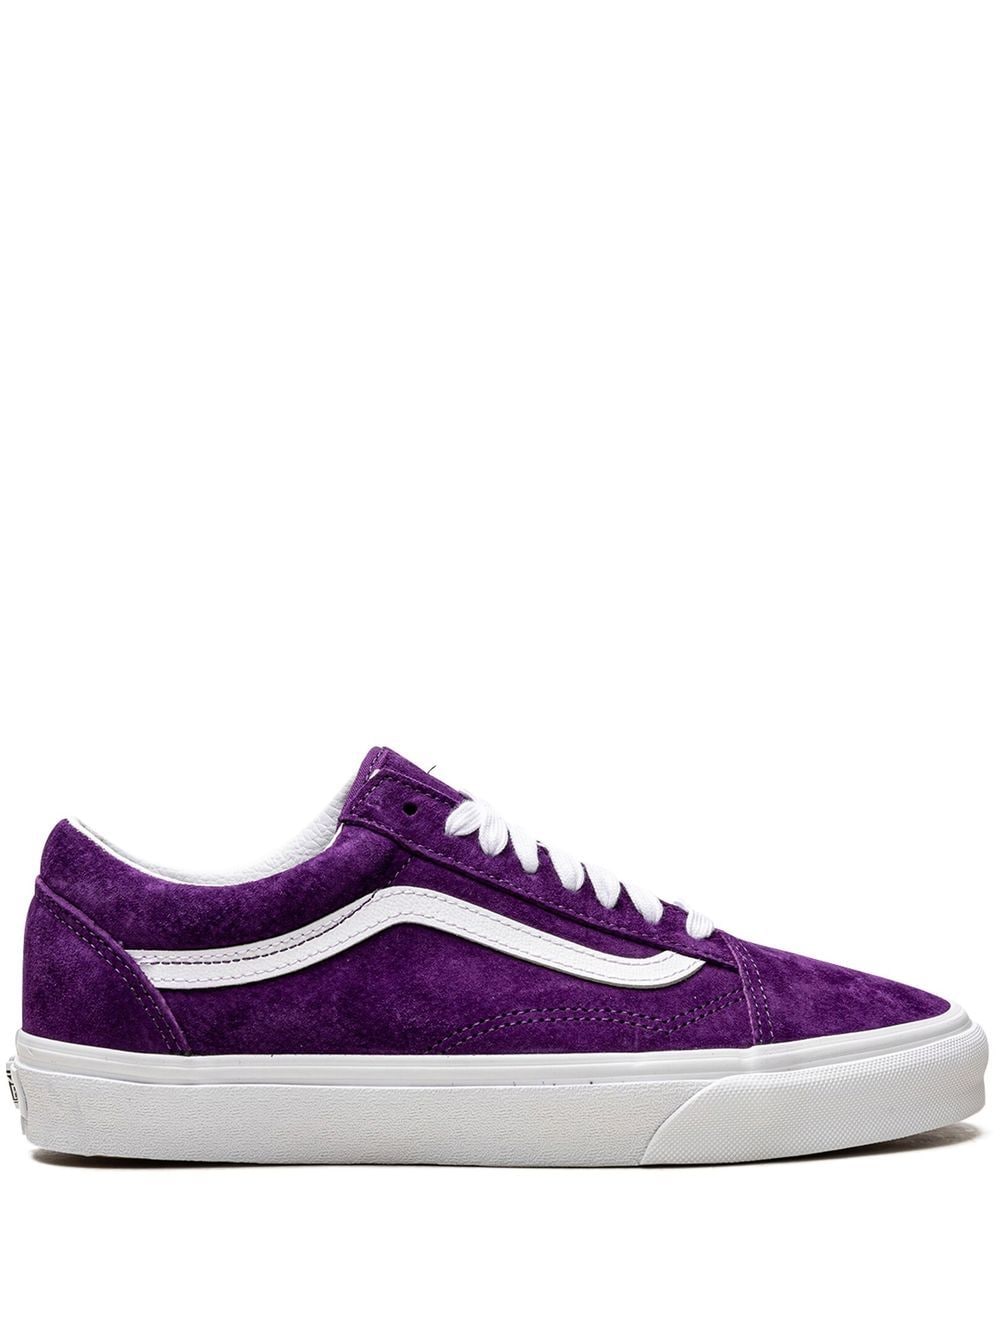 Vans Old Skool "Pig Suede" sneakers - Purple von Vans